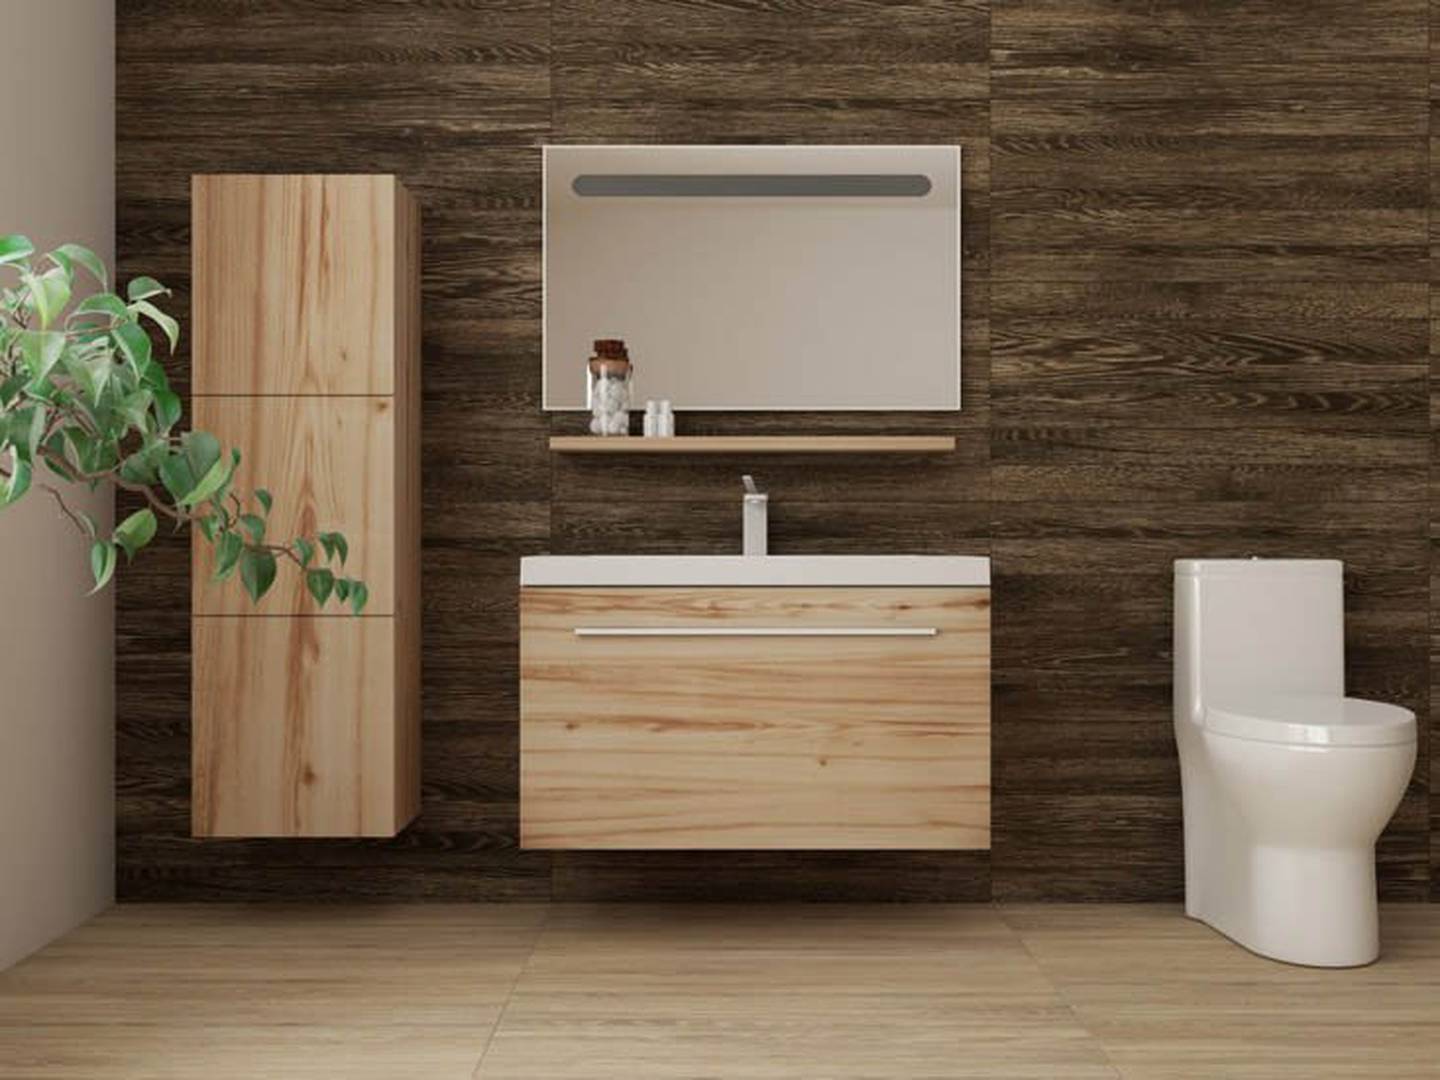 Muebles de madera para el baño: ¿es posible?